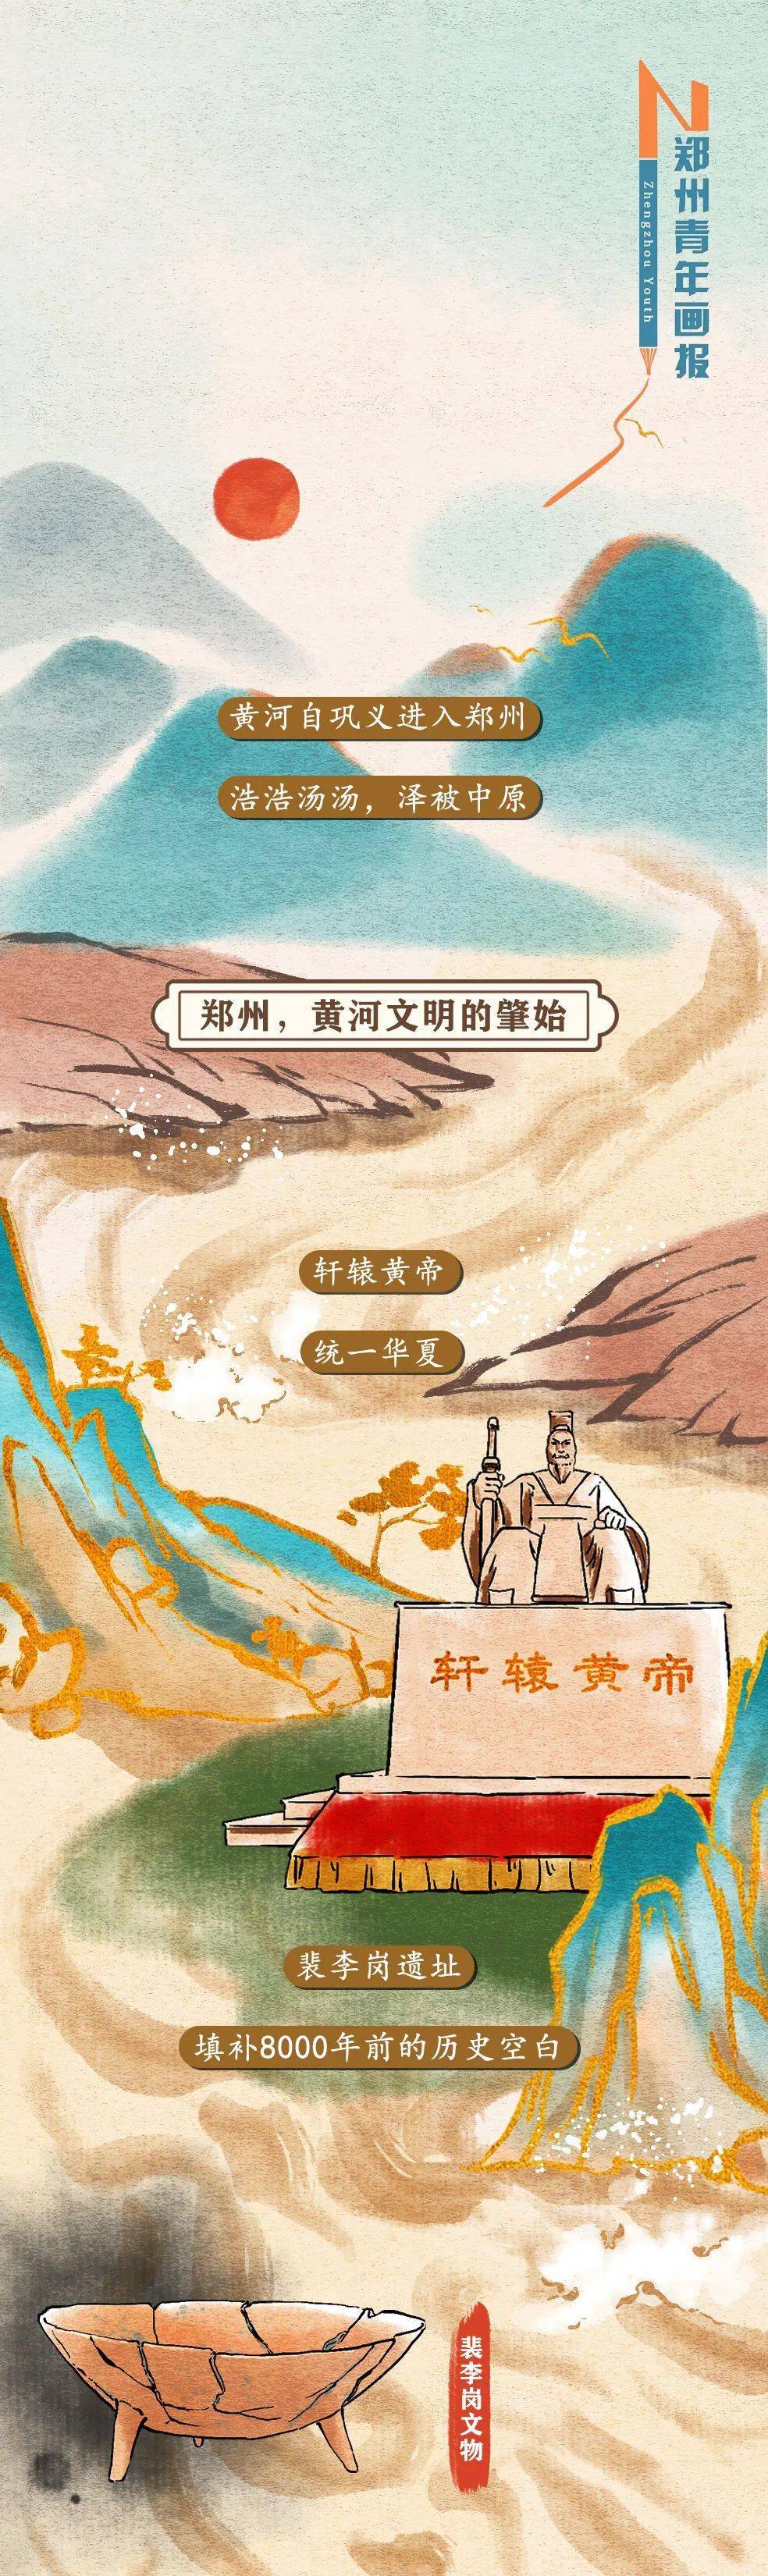 【中国梦·黄河情】黄河!黄河! 